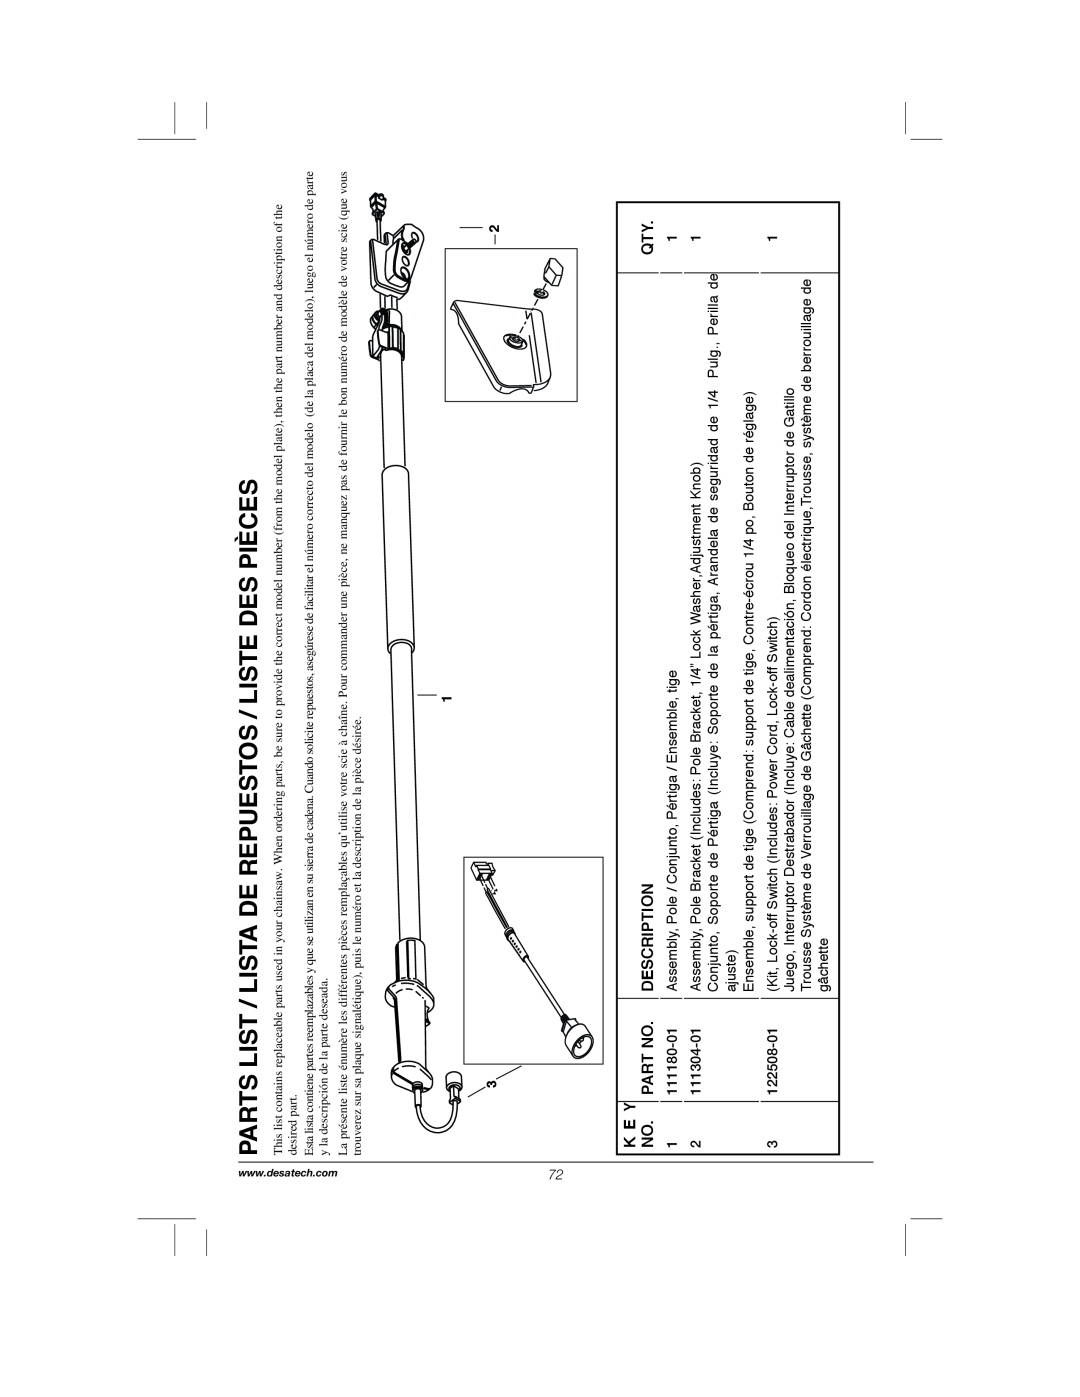 Remington Power Tools RPS2N1, 104317, PS1510A manual Parts List / Lista De Repuestos / Liste Des Pièces, K E Y, Description 